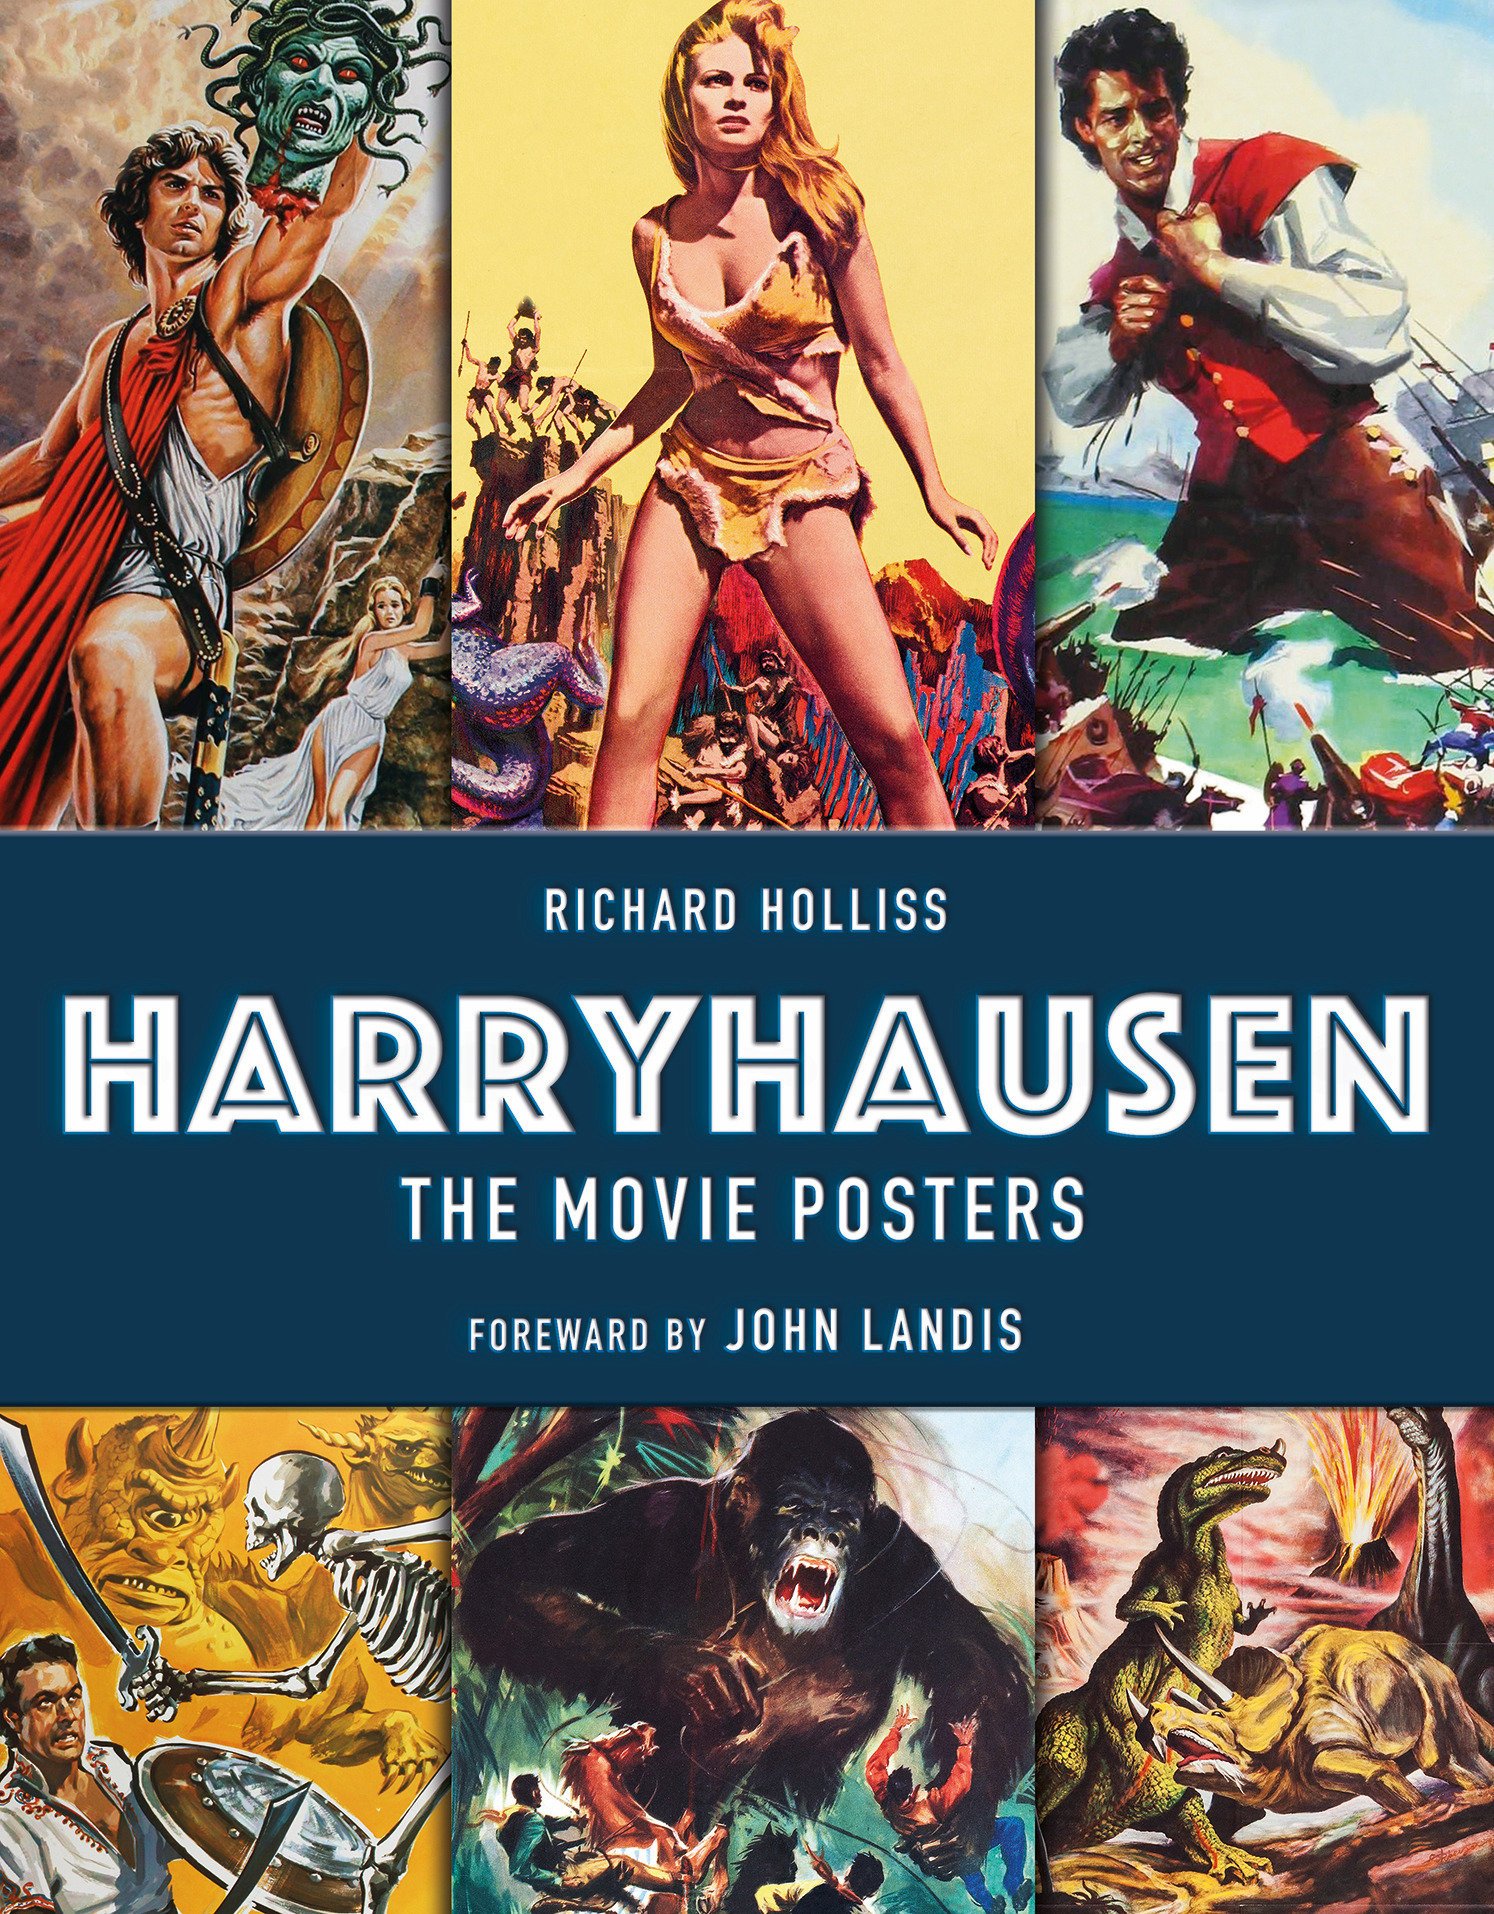 Harryhausen, The Movie Posters